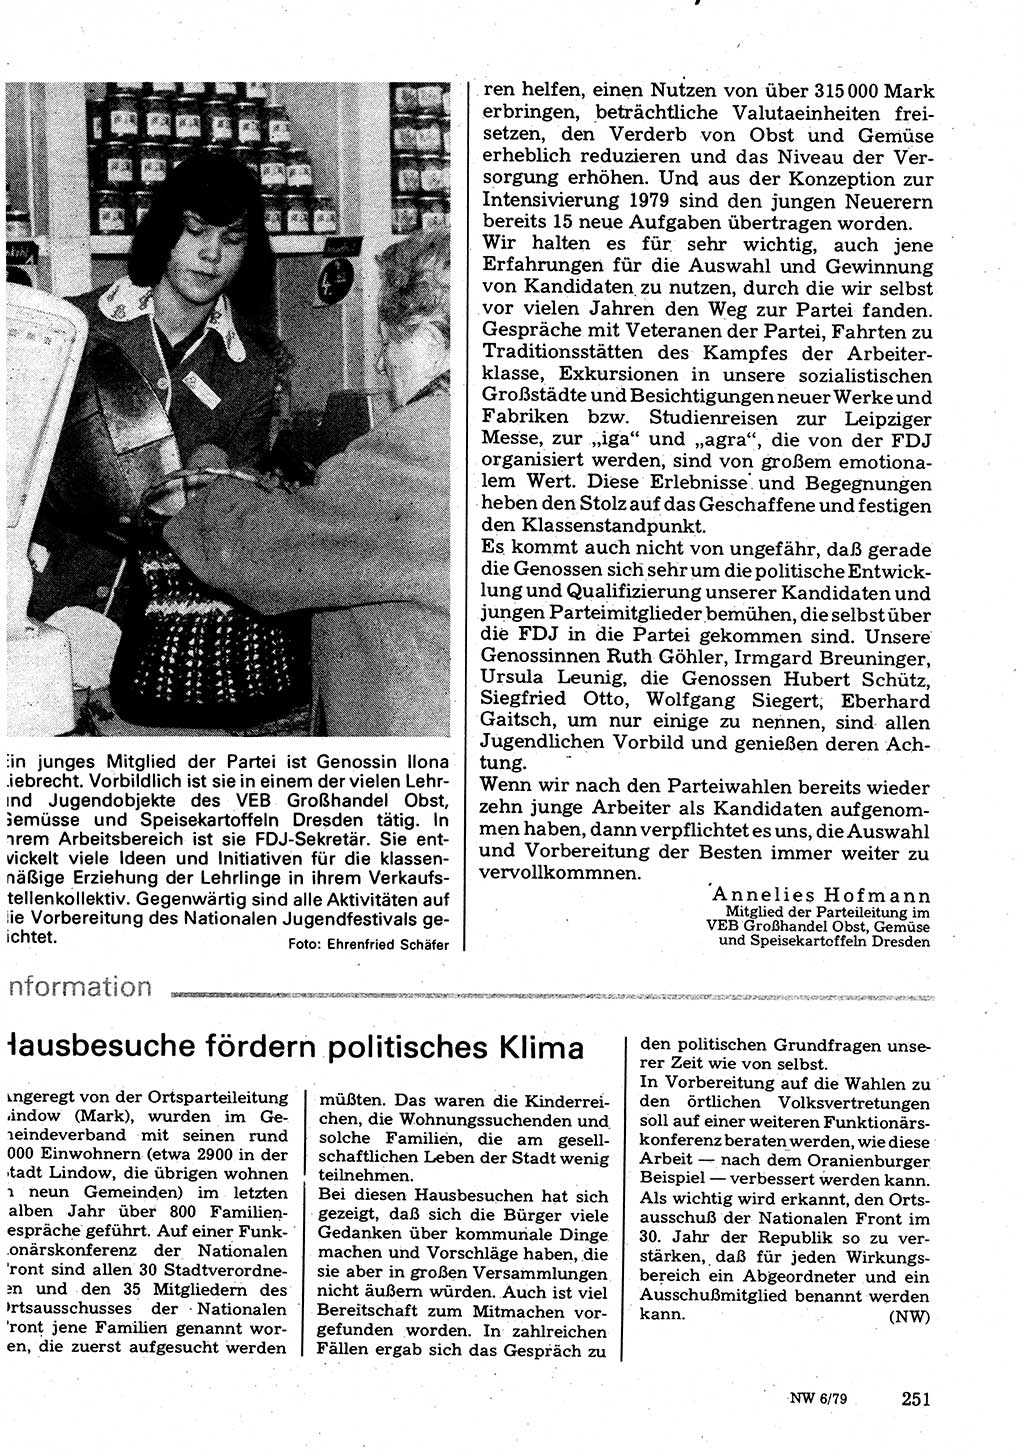 Neuer Weg (NW), Organ des Zentralkomitees (ZK) der SED (Sozialistische Einheitspartei Deutschlands) für Fragen des Parteilebens, 34. Jahrgang [Deutsche Demokratische Republik (DDR)] 1979, Seite 251 (NW ZK SED DDR 1979, S. 251)